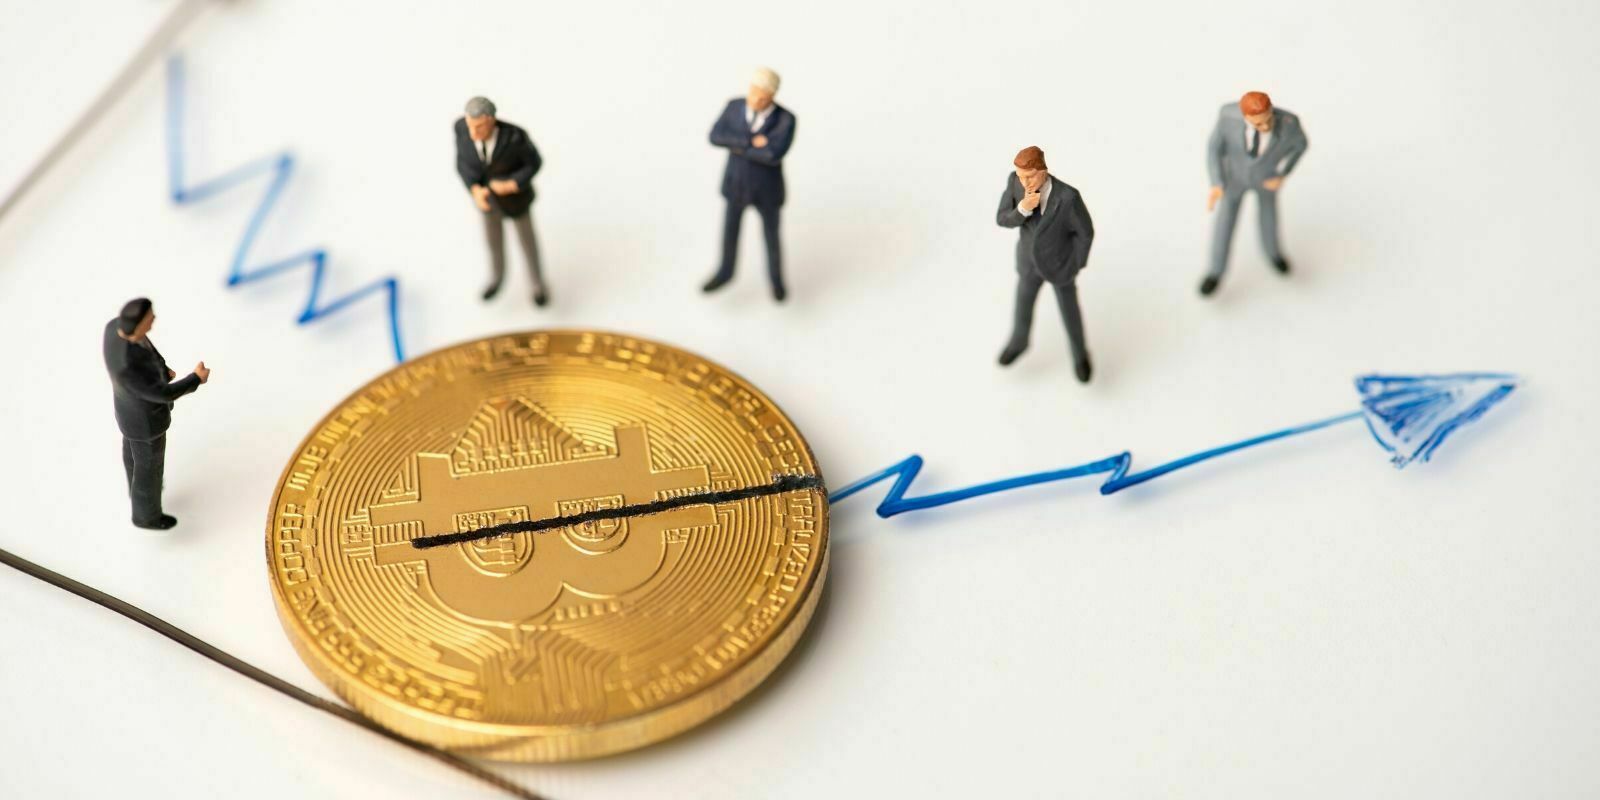 Étude : À quel point le sentiment du marché est-il lié au prix du Bitcoin ?